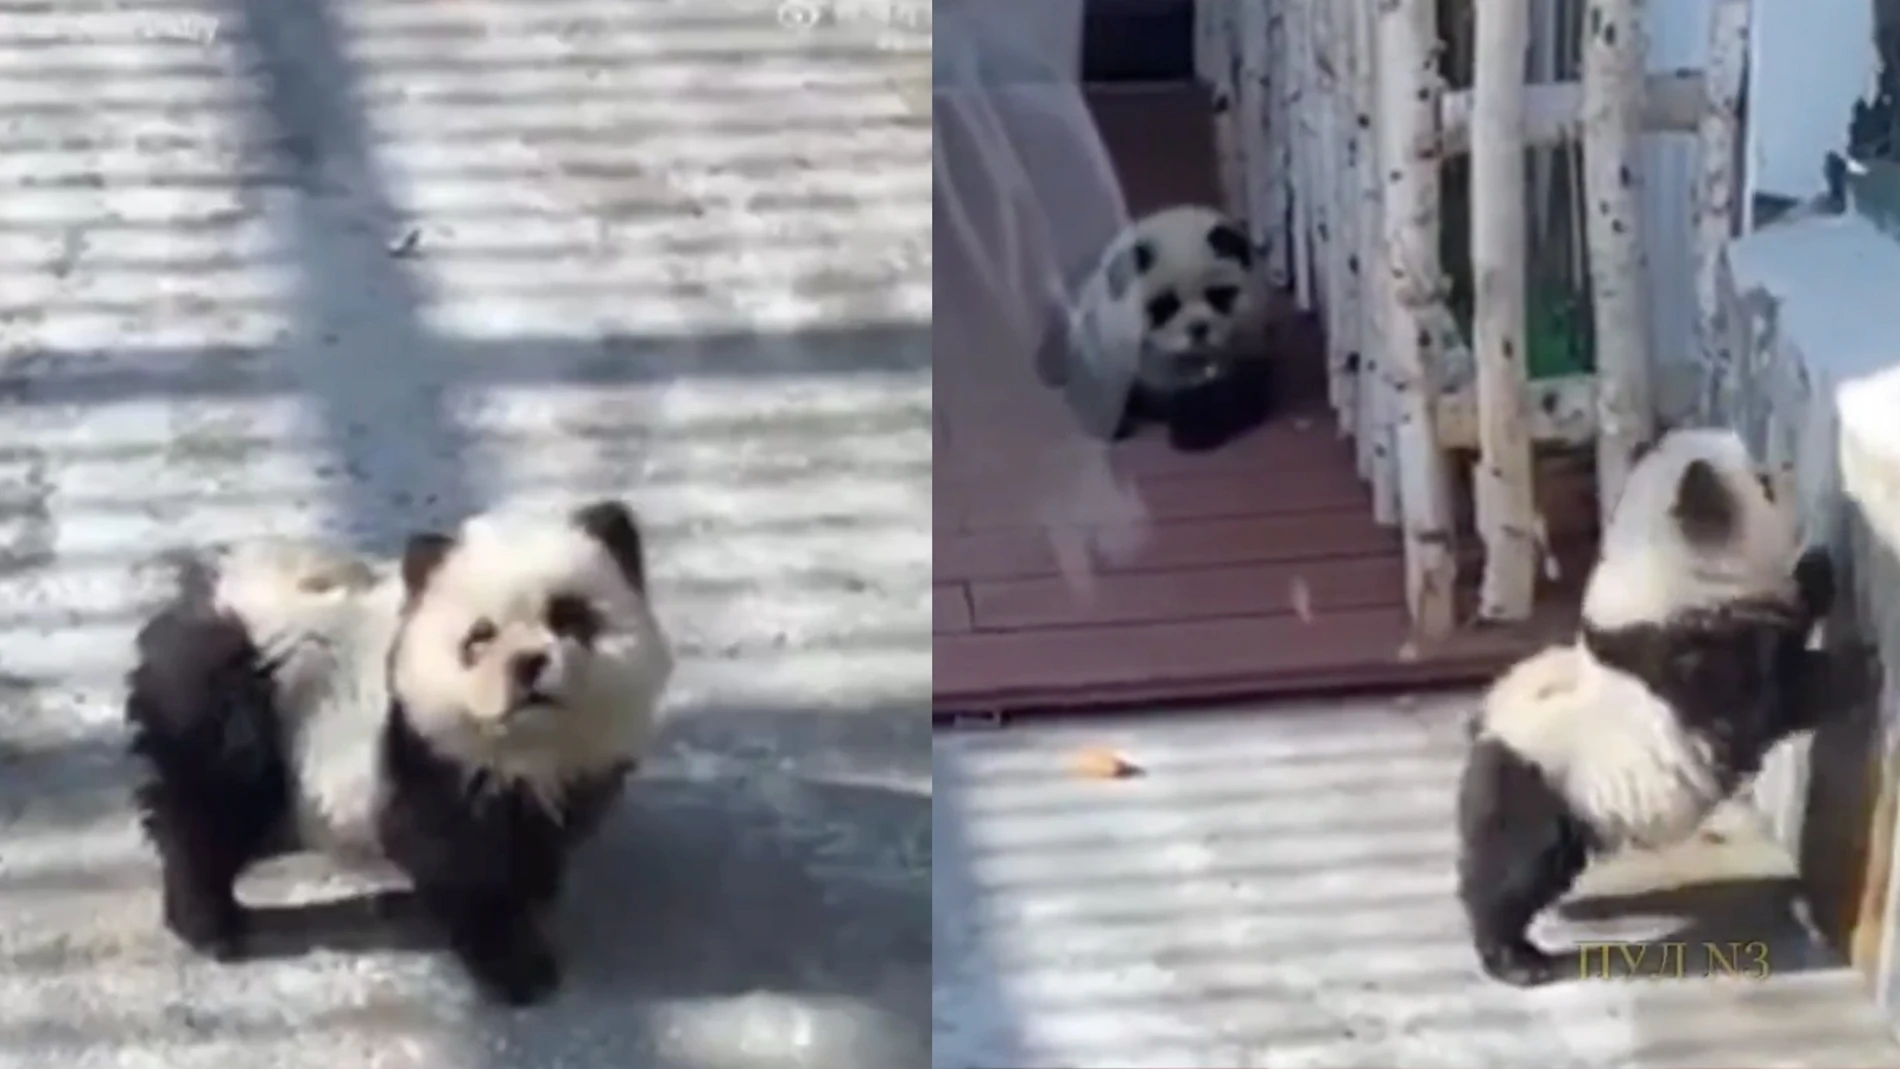 Un zoológico tiñe perros para hacerlos pasar por osos pandas 